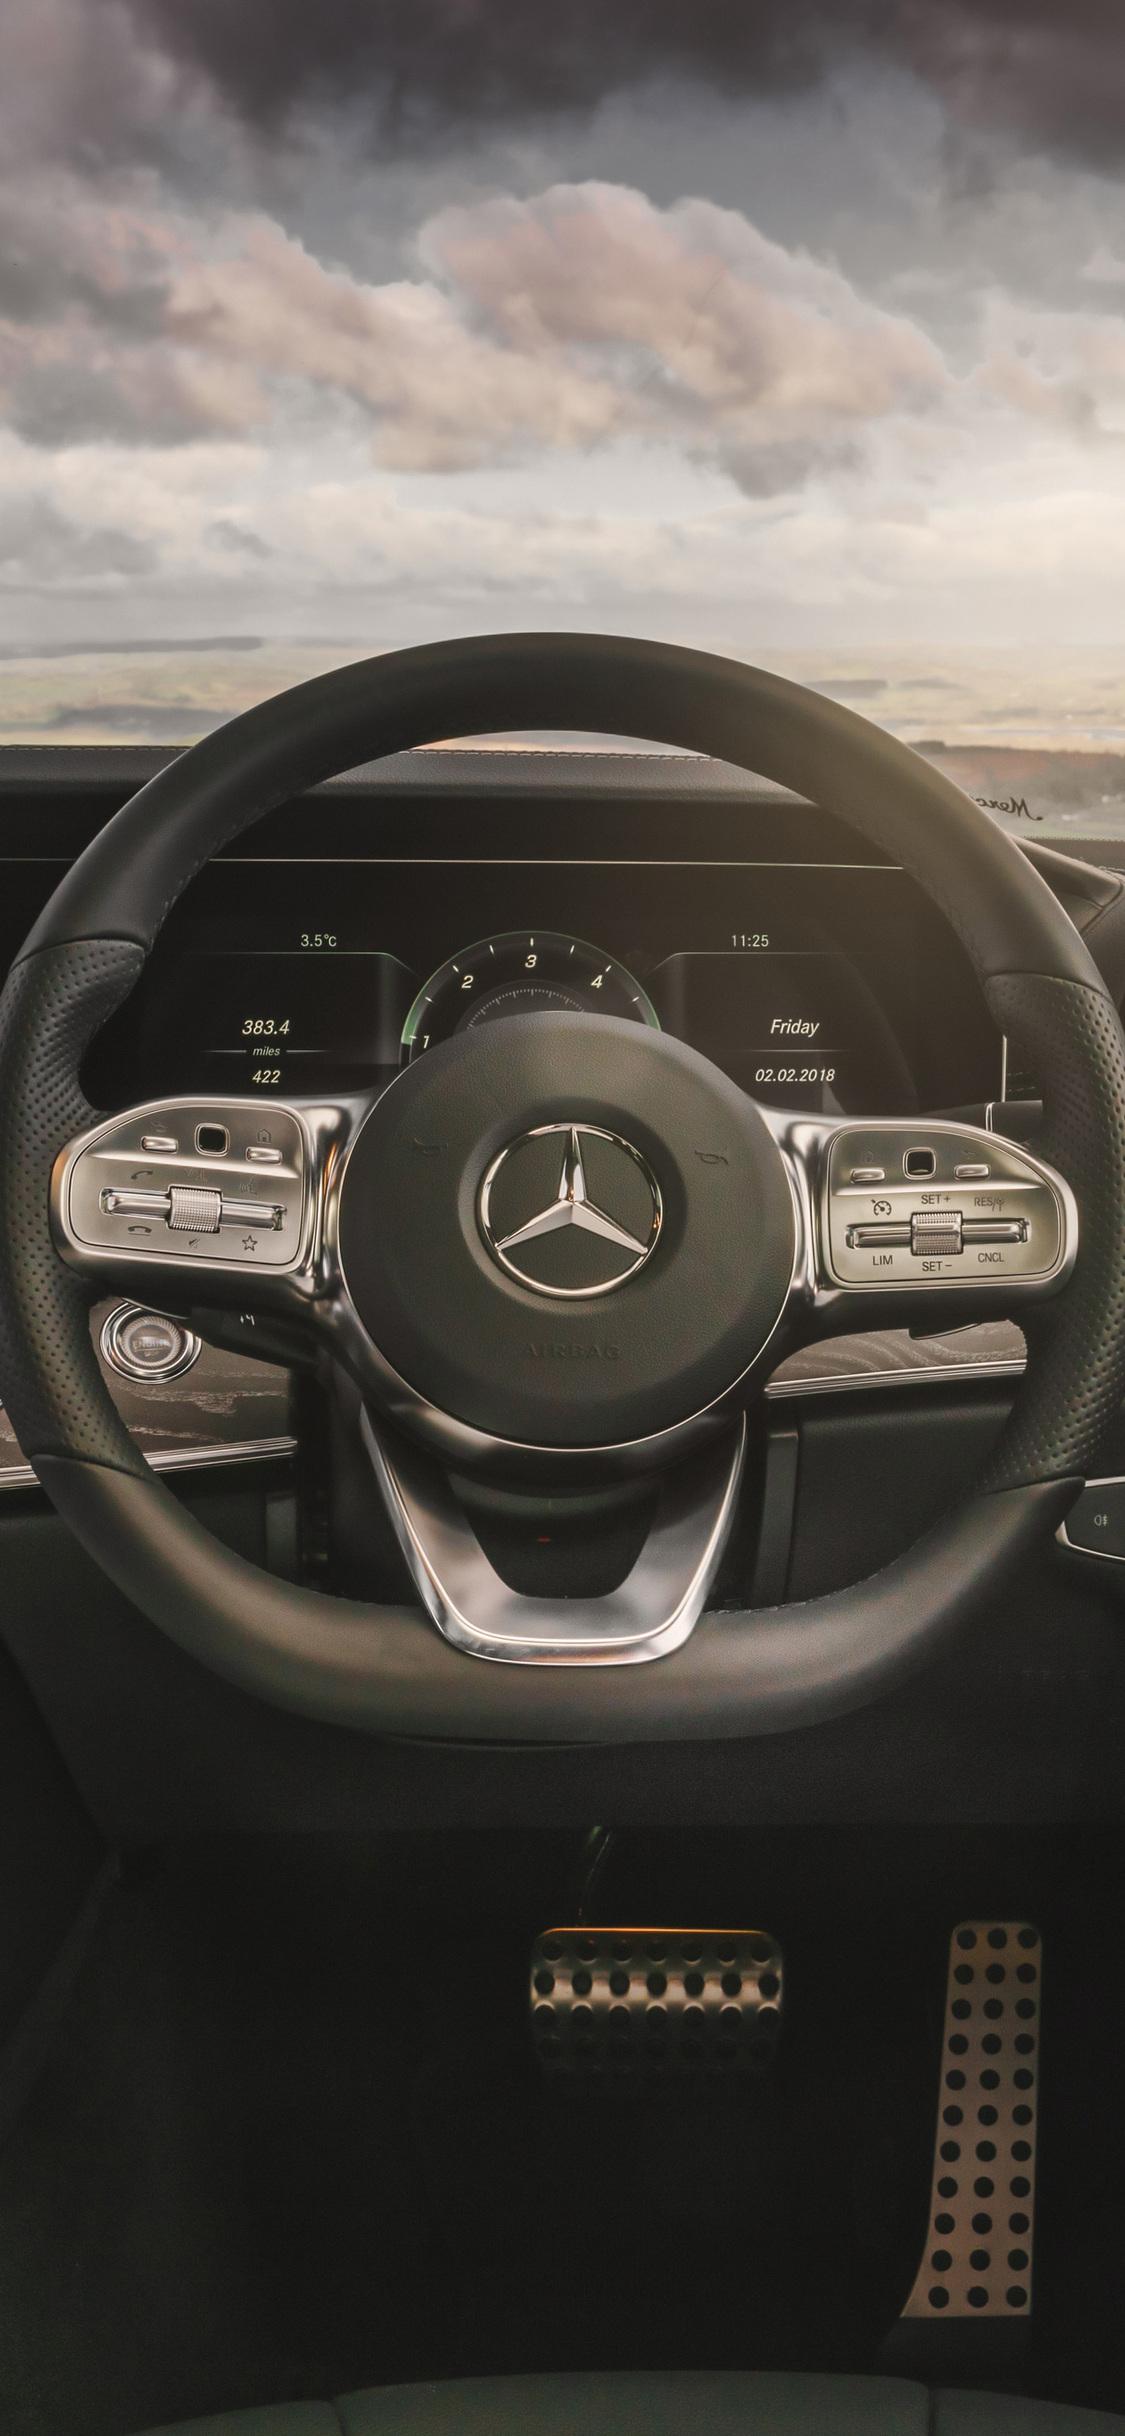 Mercedes Benz CLS 400 D AMG Interior iPhone XS